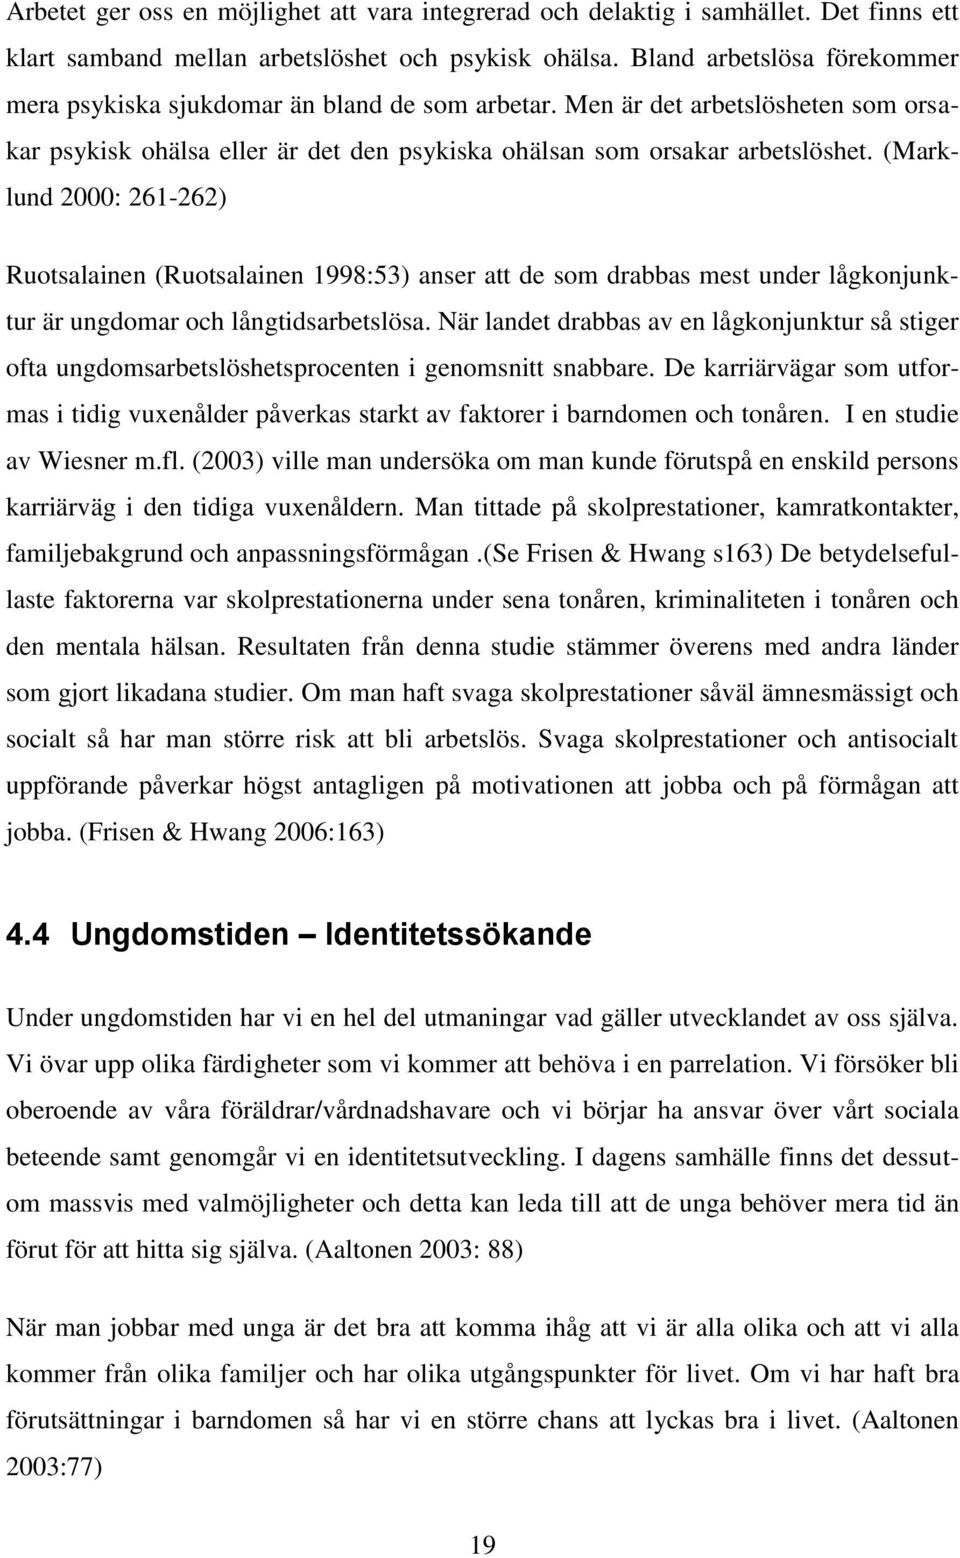 (Marklund 2000: 261-262) Ruotsalainen (Ruotsalainen 1998:53) anser att de som drabbas mest under lågkonjunktur är ungdomar och långtidsarbetslösa.